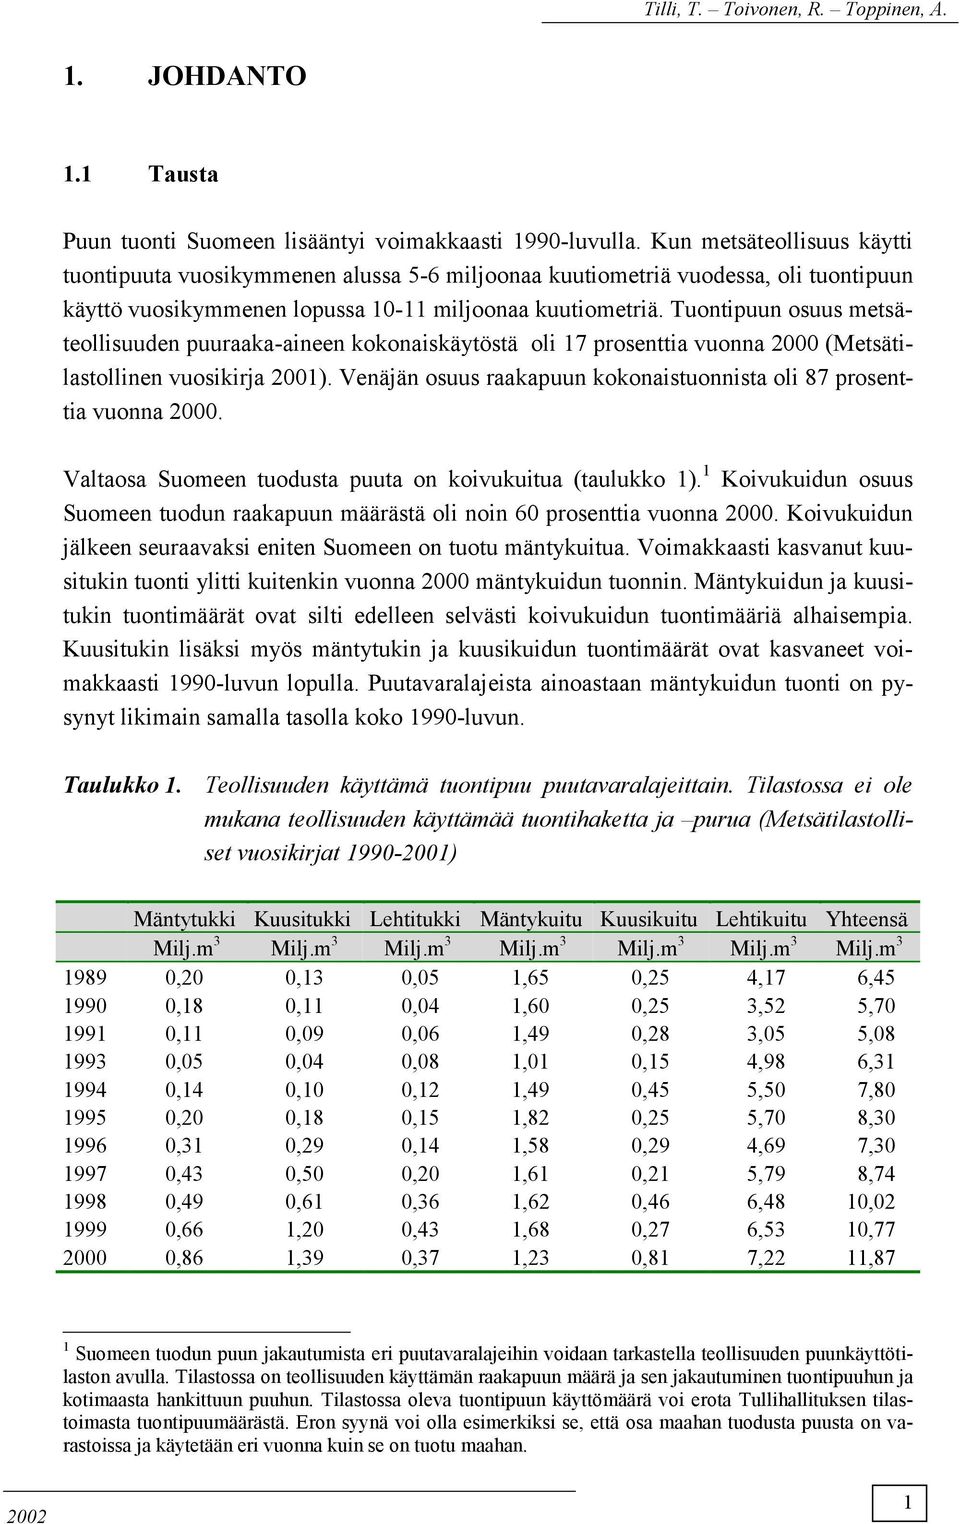 Tuontipuun osuus metsäteollisuuden puuraaka-aineen kokonaiskäytöstä oli 17 prosenttia vuonna 2 (Metsätilastollinen vuosikirja 21). Venäjän osuus raakapuun kokonaistuonnista oli 87 prosenttia vuonna 2.